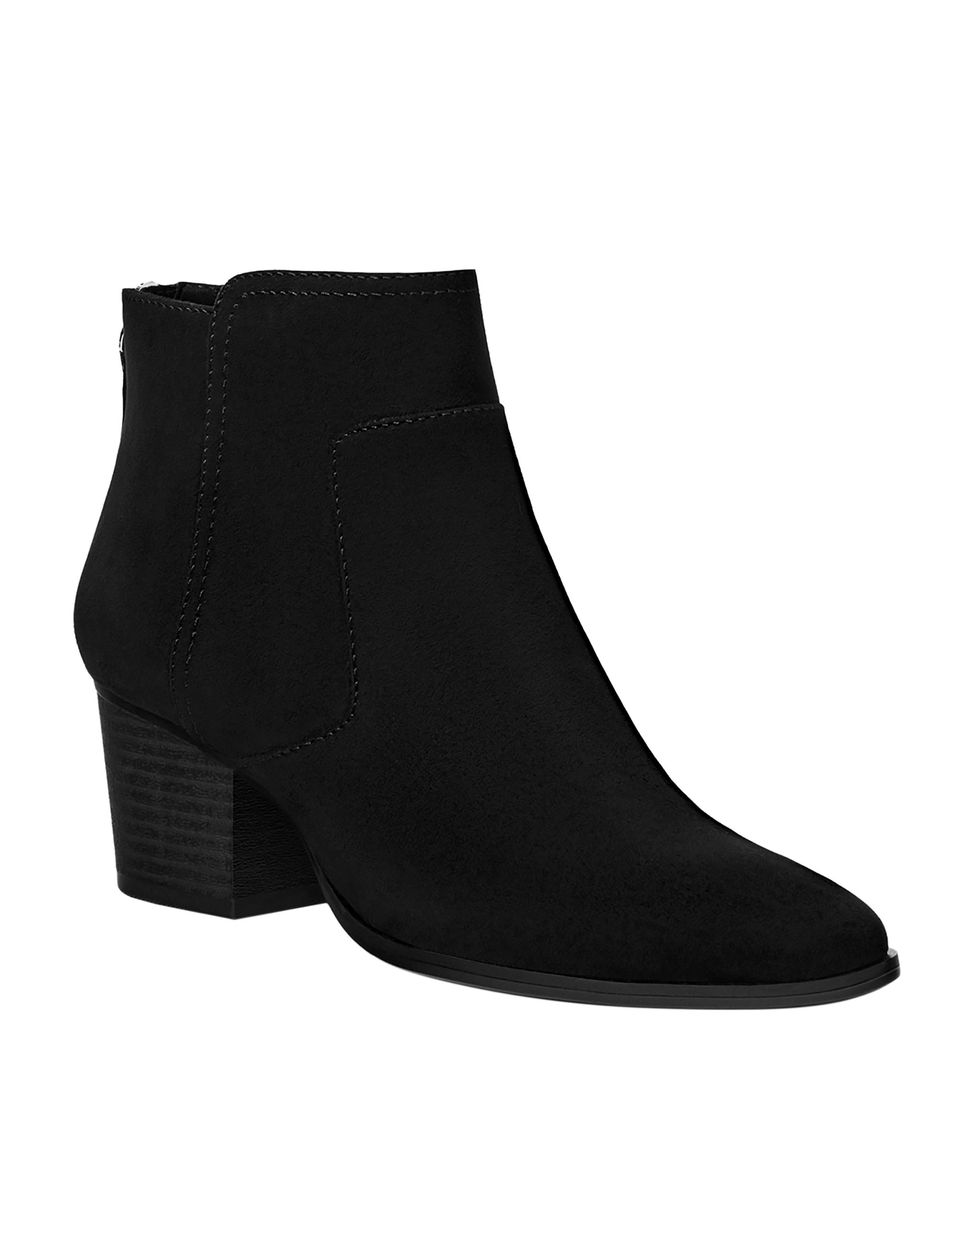 Footwear, Black, Shoe, Boot, Leather, Suede, High heels, 